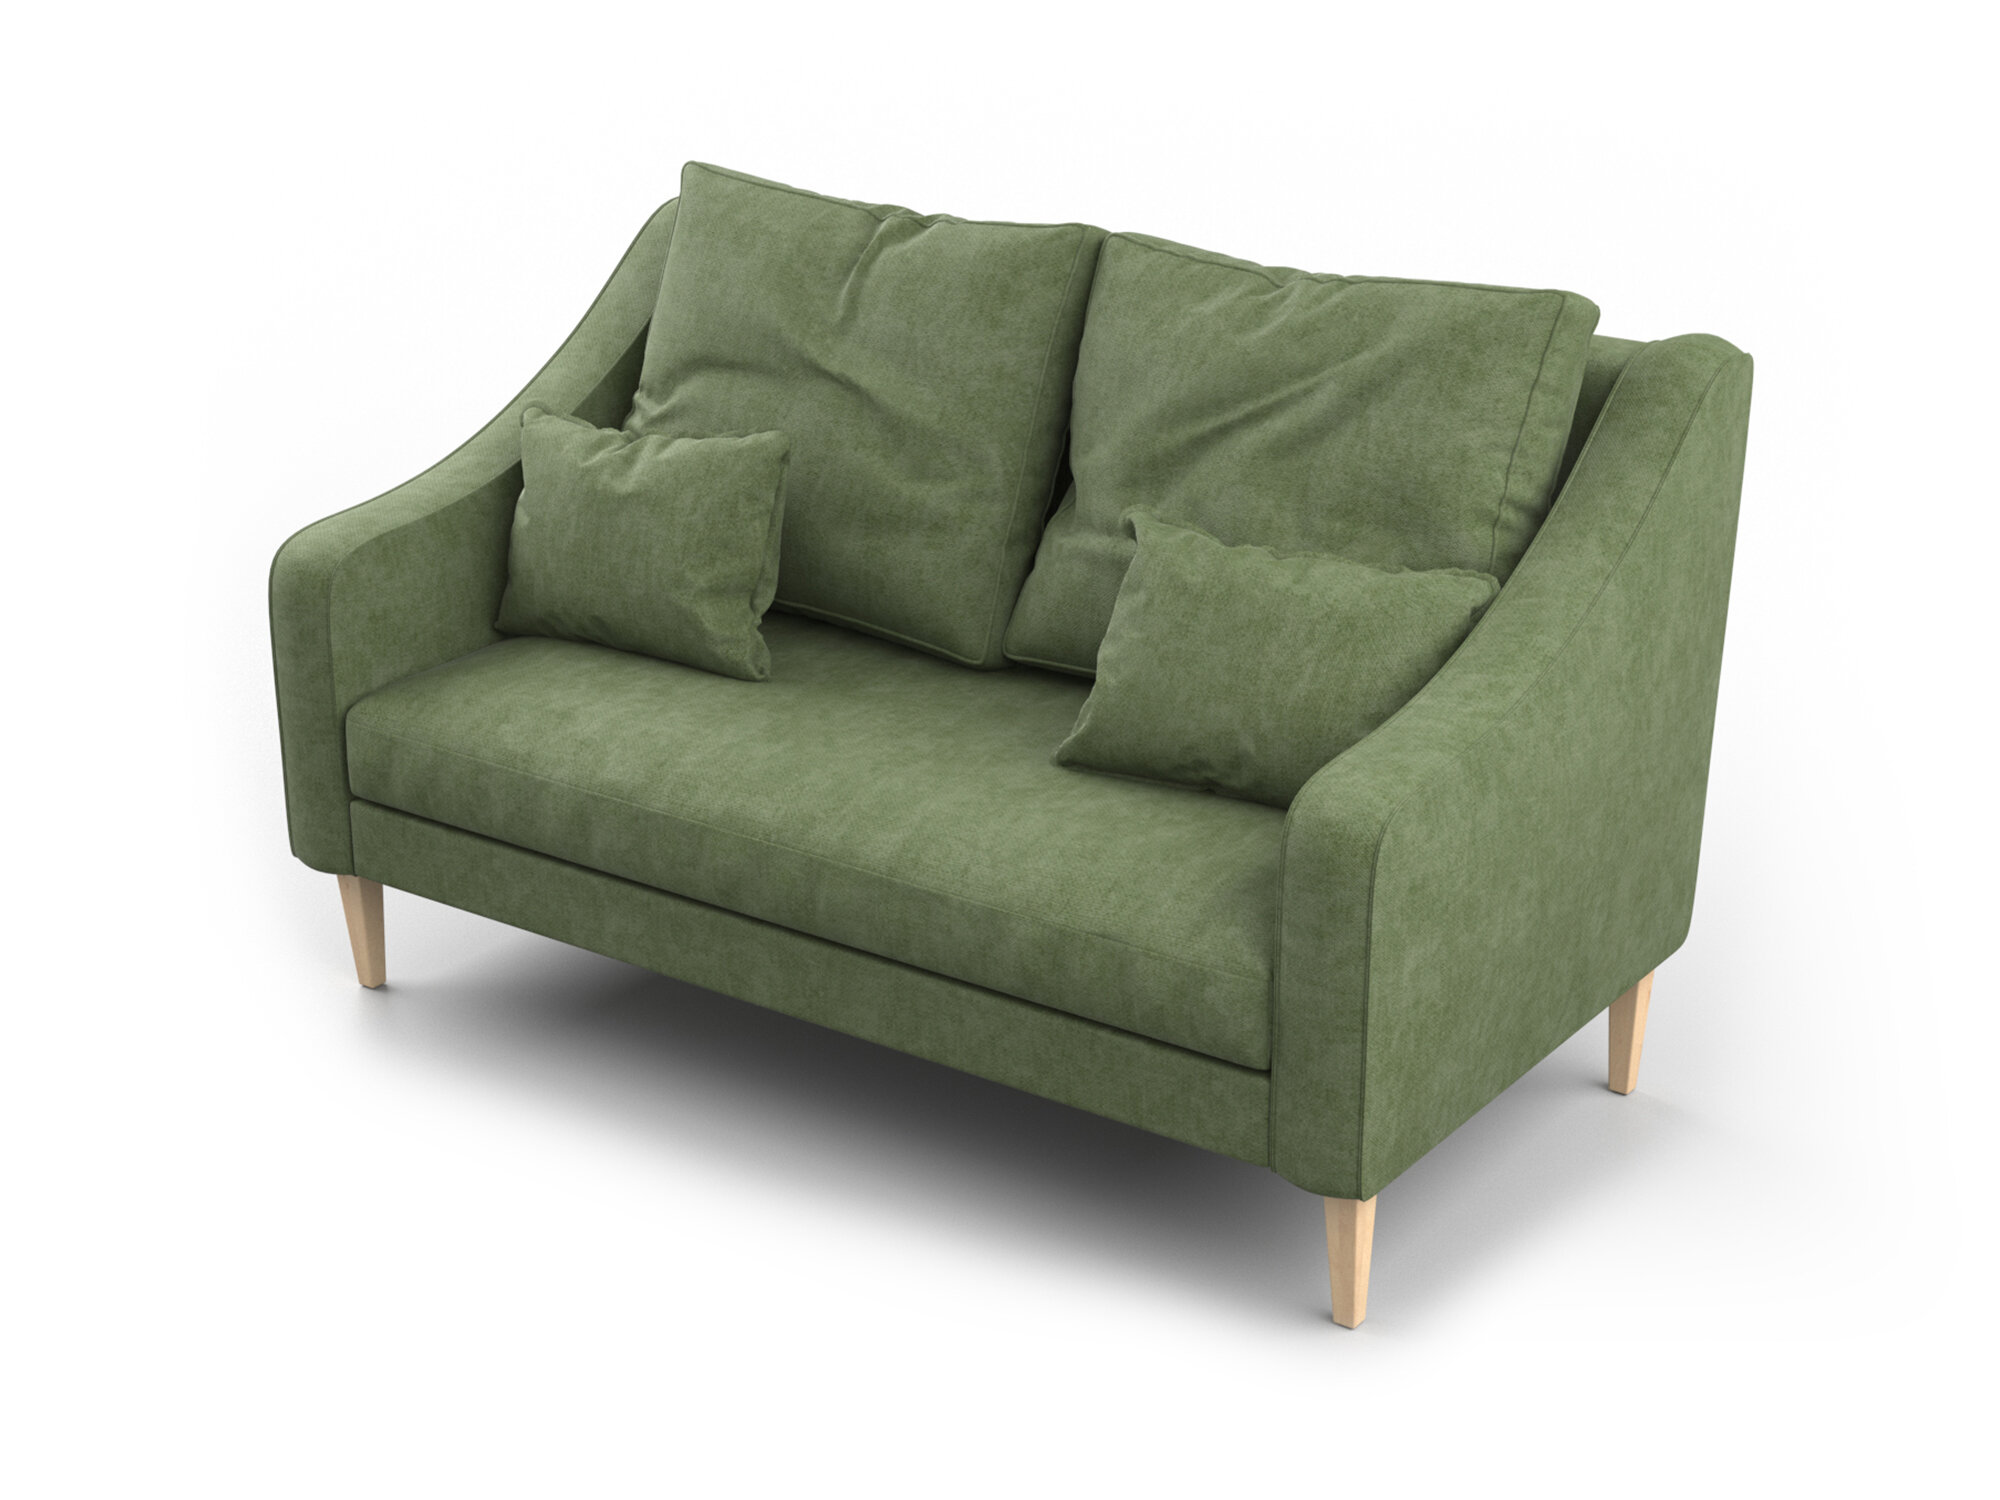 Дизайнерский диван Soft Element Ричи, двухместный, дерево, вельвет, зеленый, стиль, в офис, для салона красоты, для кафе и ресторанов